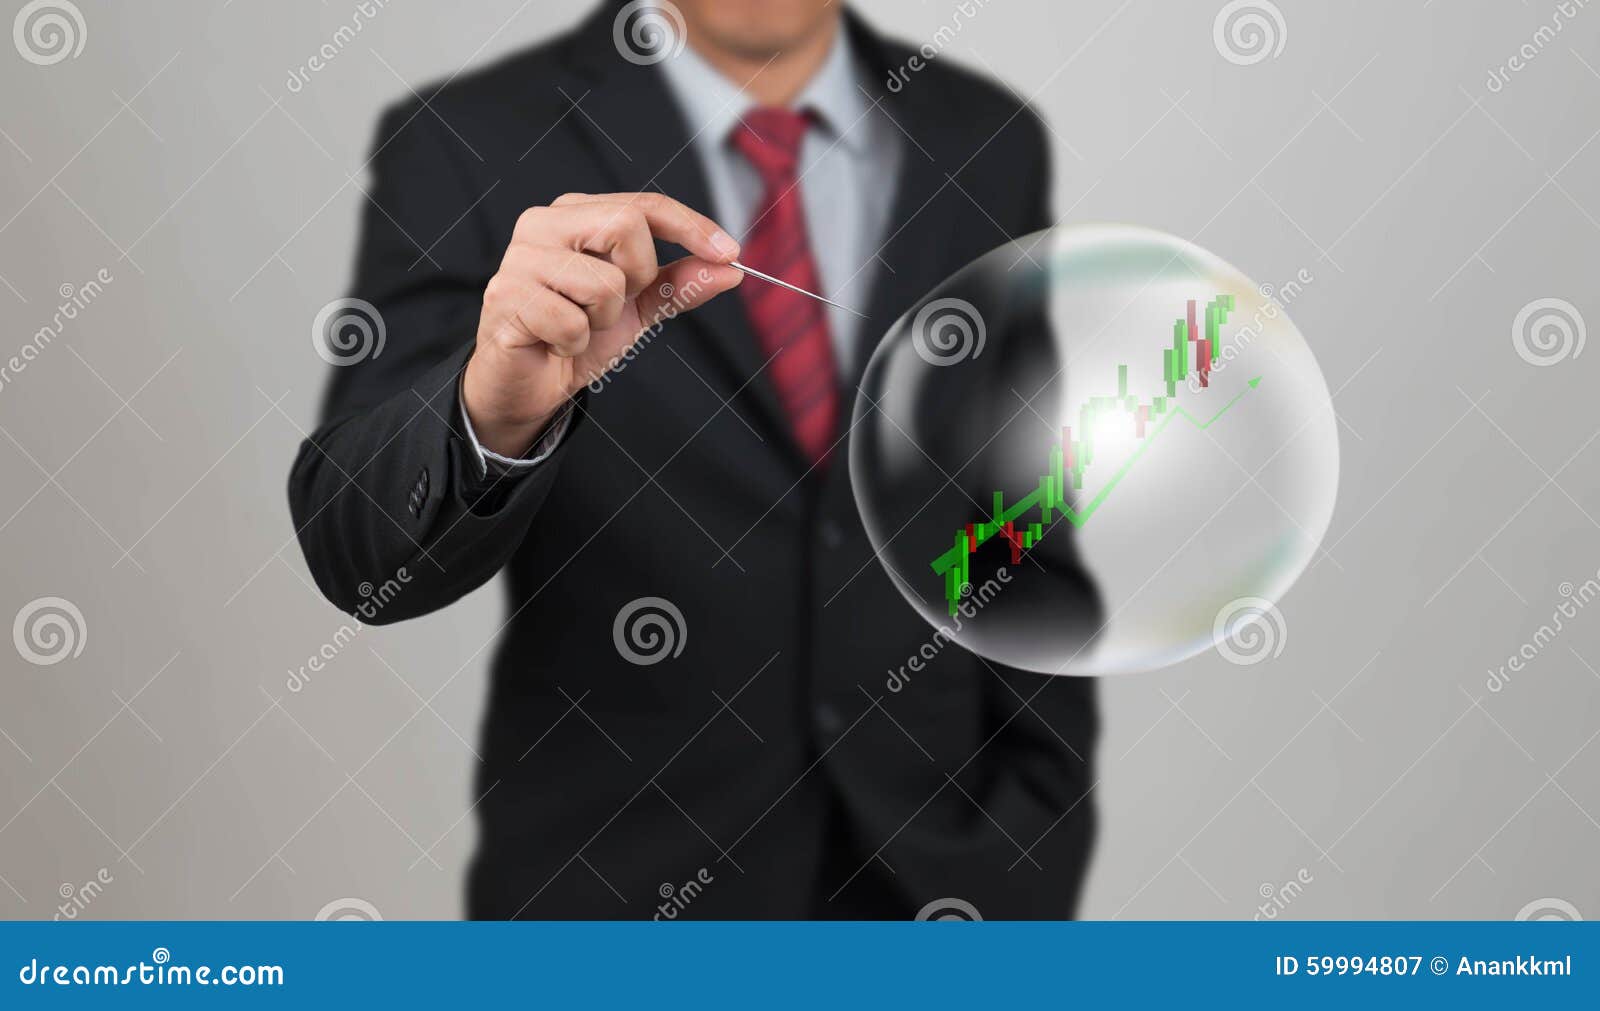 Bluehole Stock Chart